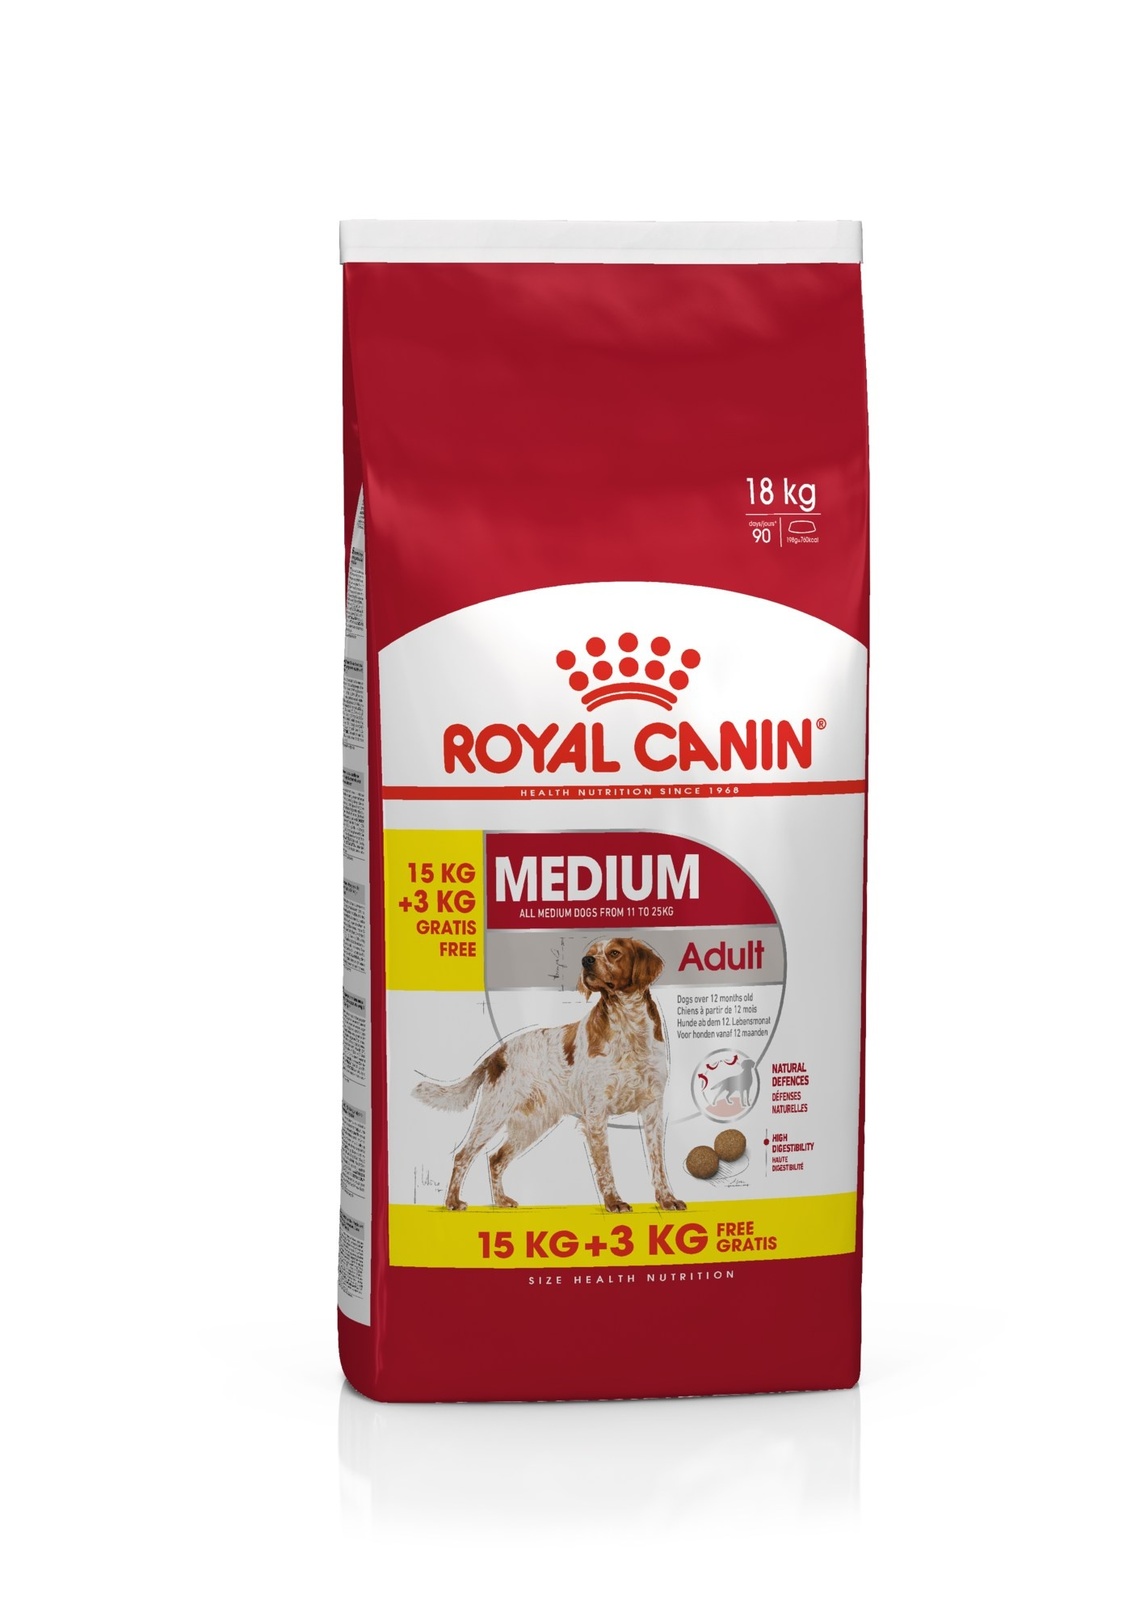 Для взрослых собак средних размеров: 11-25 кг, 1-7 лет (3 кг) Royal Canin (сухие корма) Для взрослых собак средних размеров: 11-25 кг, 1-7 лет (3 кг) - фото 5